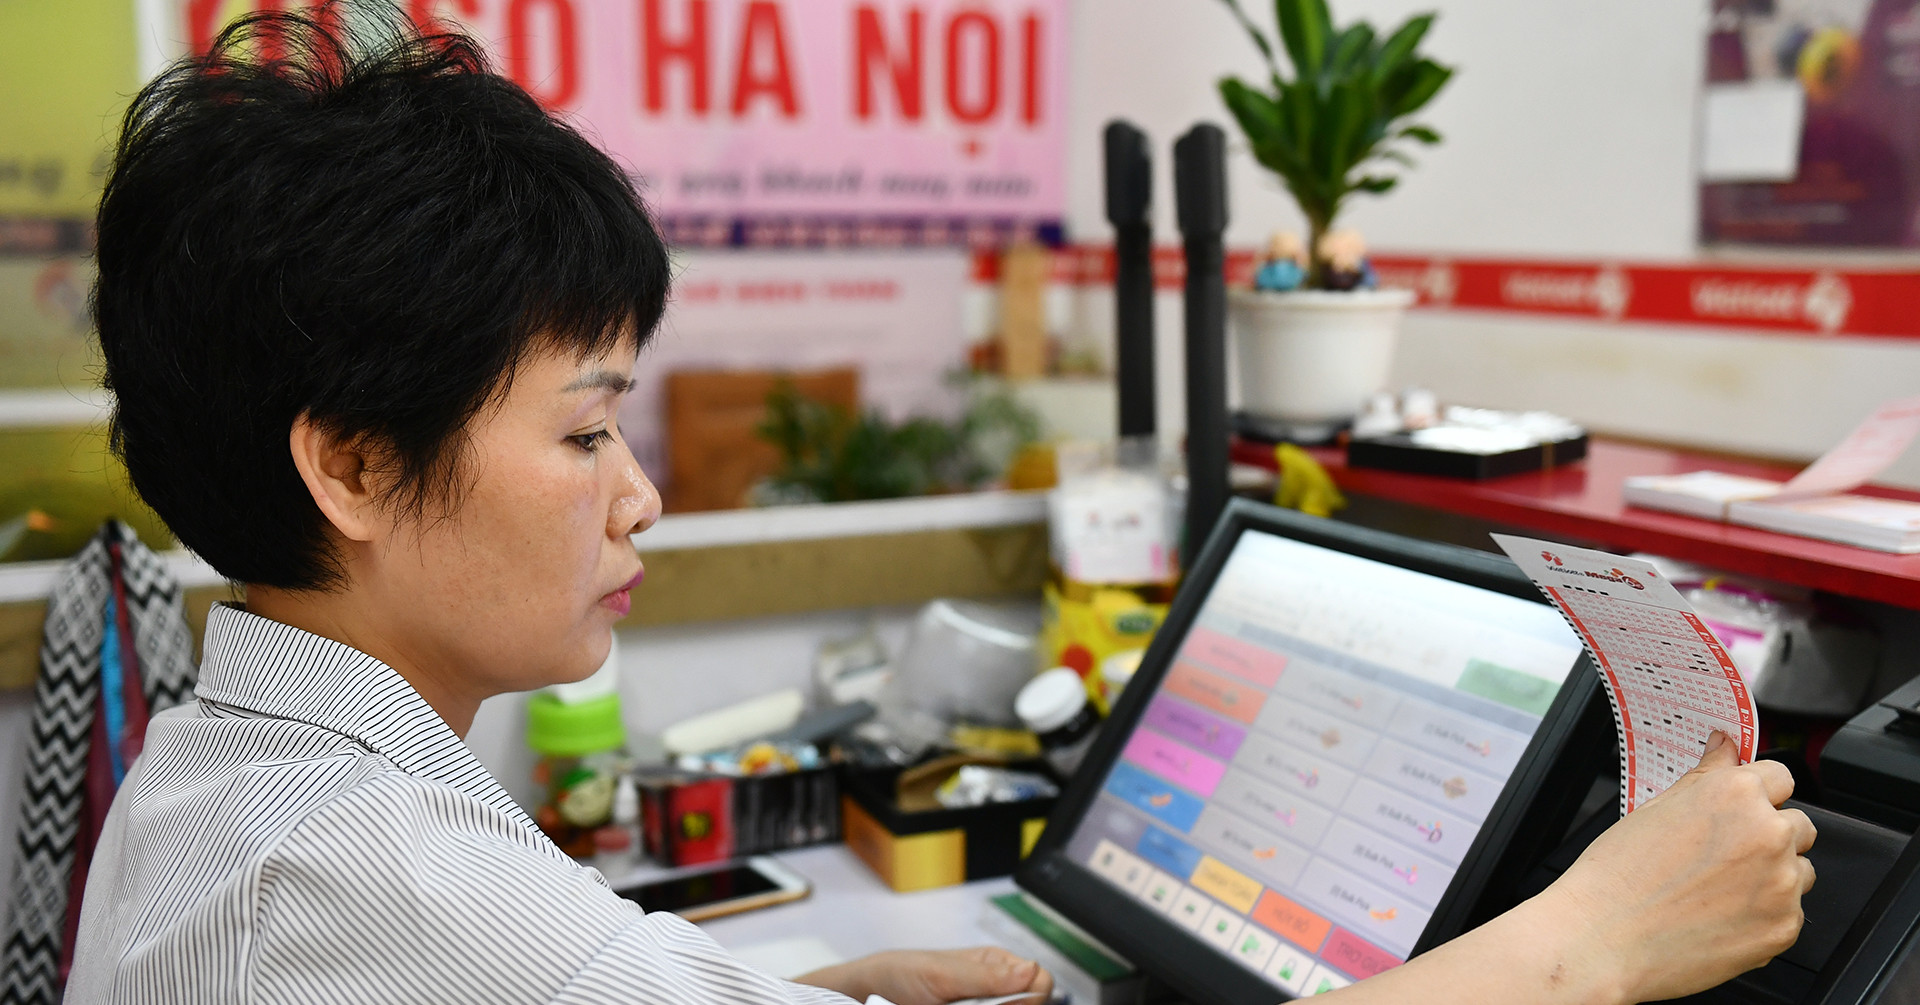 彩票业务平均每天支付预算超过2000亿越南盾